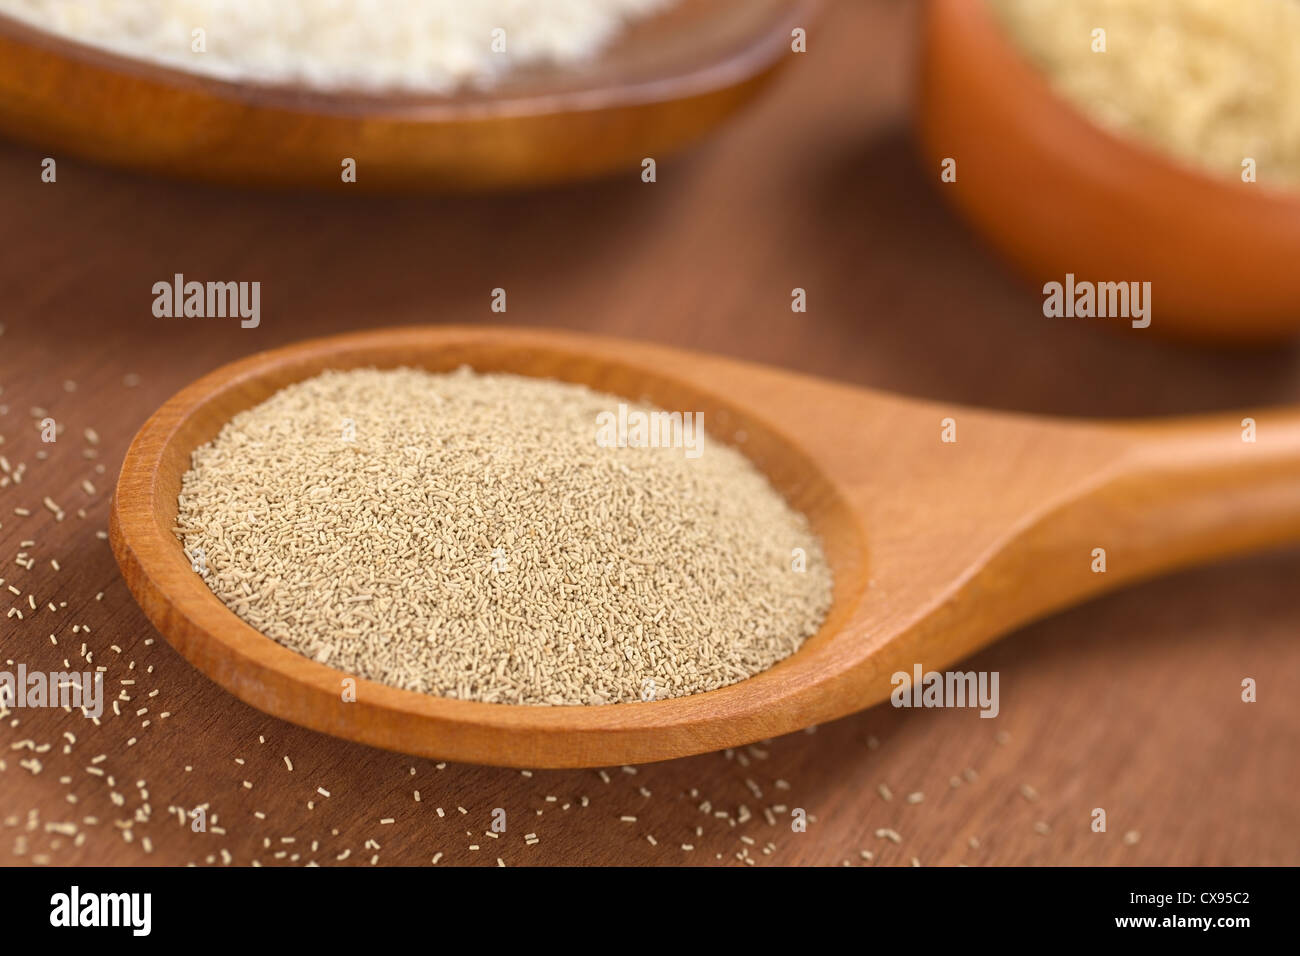 La cottura Ingredienti: lievito secco attivo sul cucchiaio di legno con origano e la farina nel retro Foto Stock